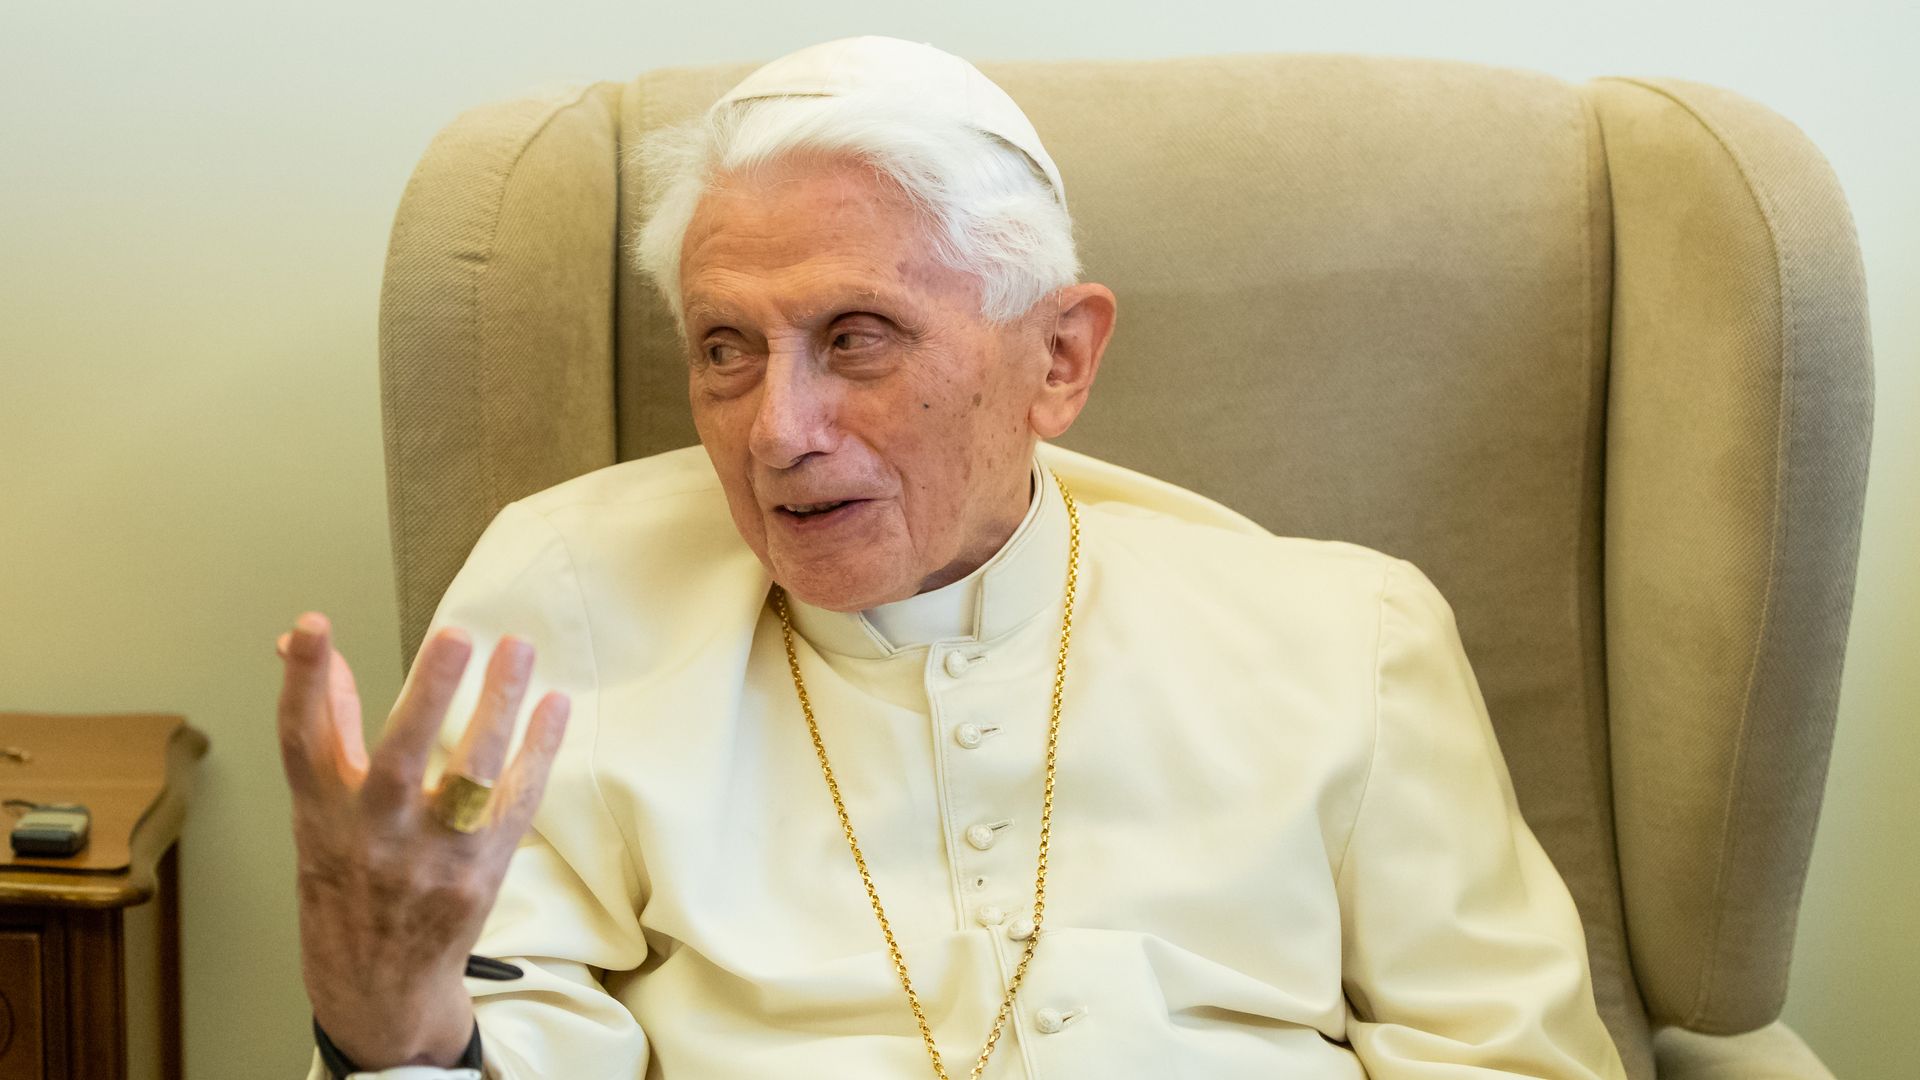  Former Pope Benedict XVI in Vatican City in June 2018.